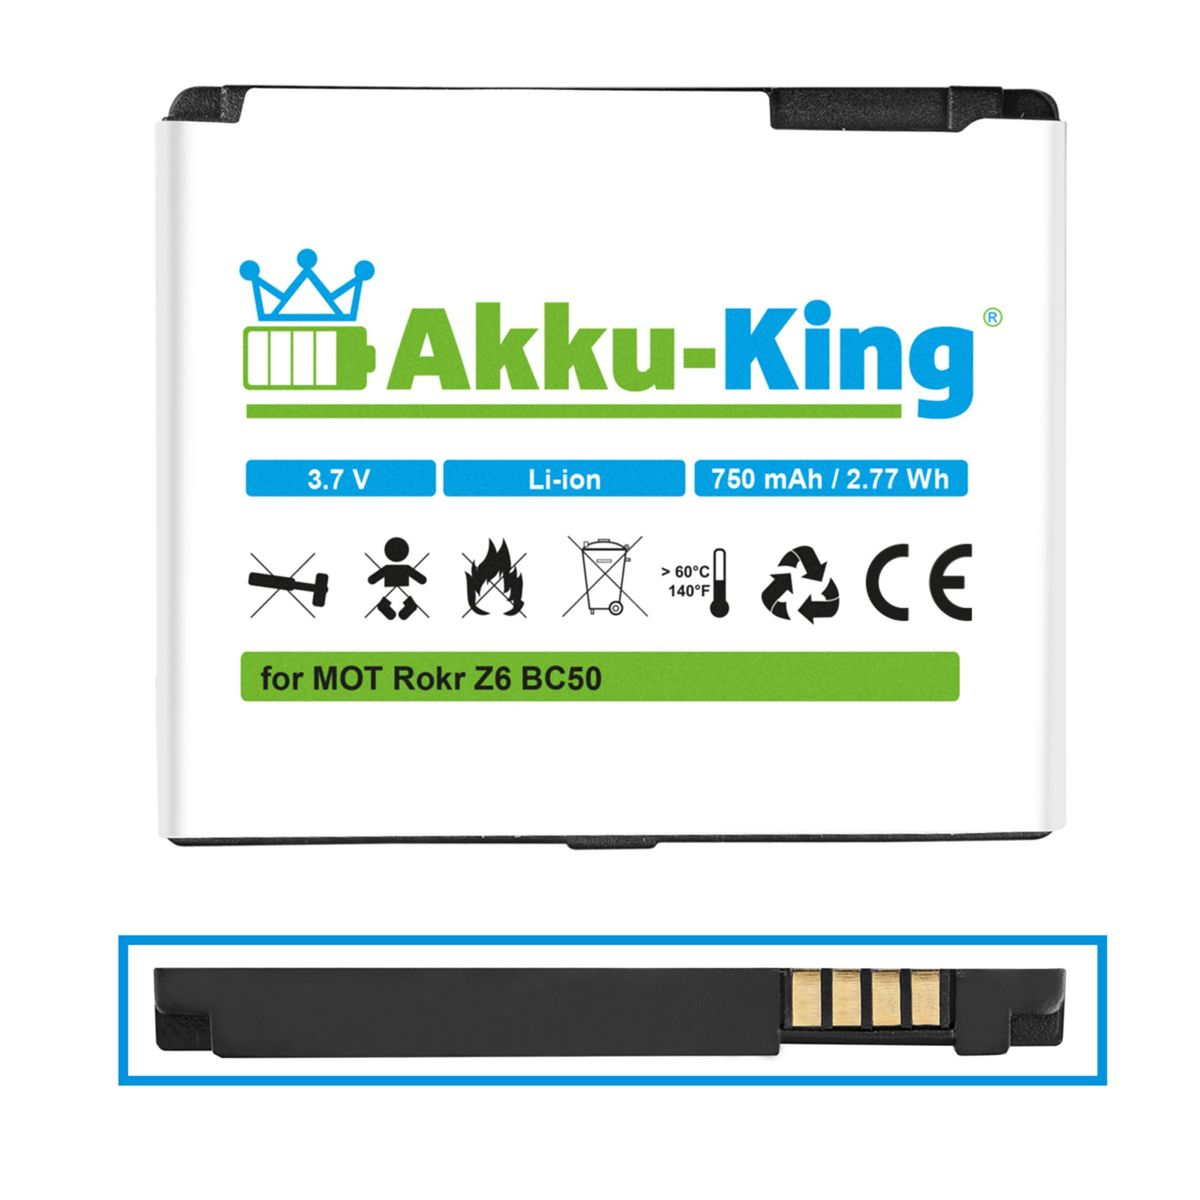 mit 750mAh Volt, Li-Ion Handy-Akku, Akku BC50 Motorola AKKU-KING kompatibel 3.7